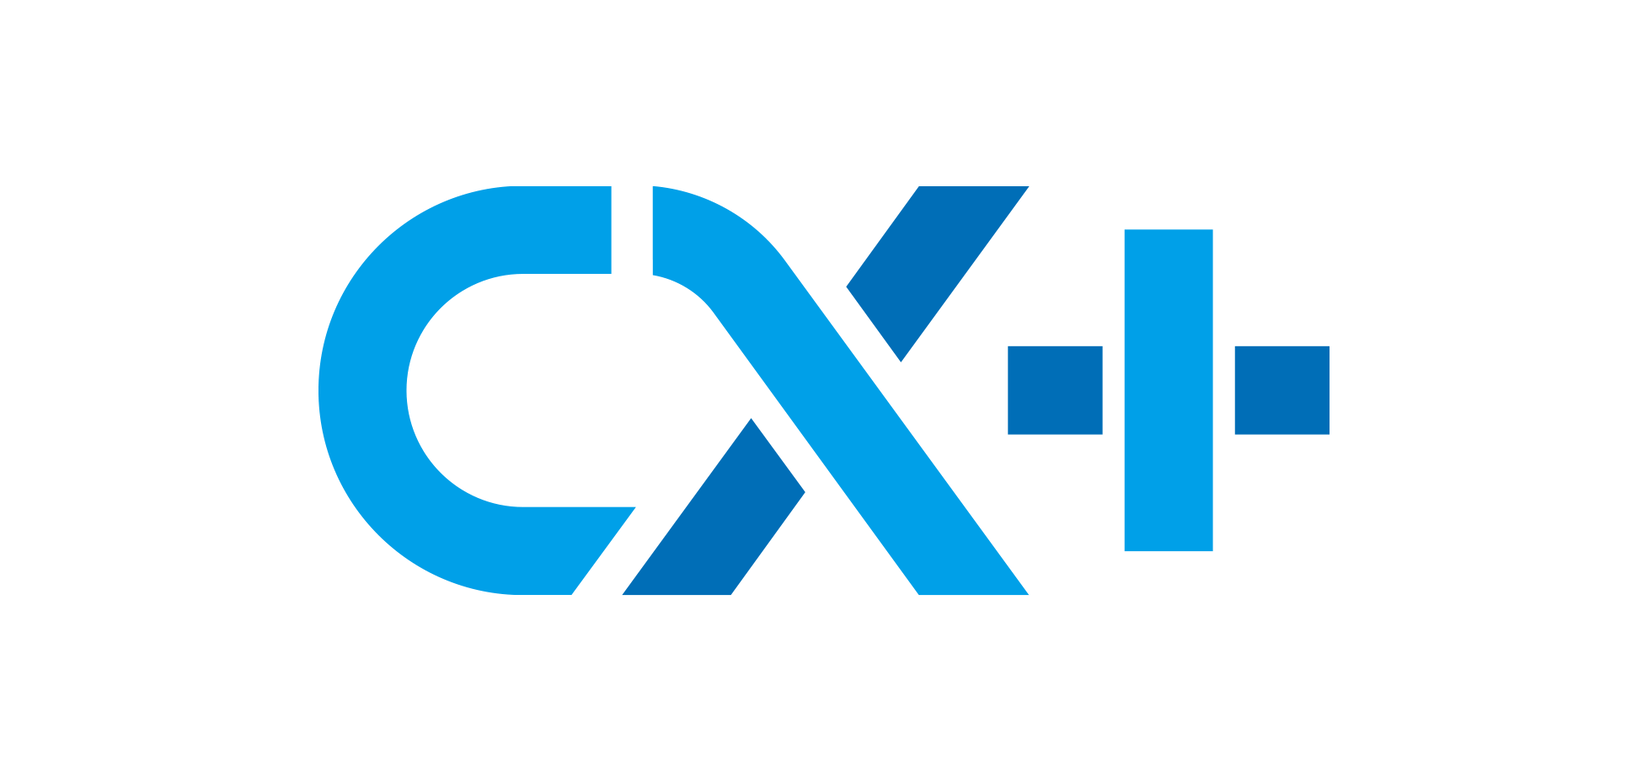 サイバーエージェント子会社でCX事業を行うポンテム、問い合わせ管理クラウドサービス「CX＋」を提供開始